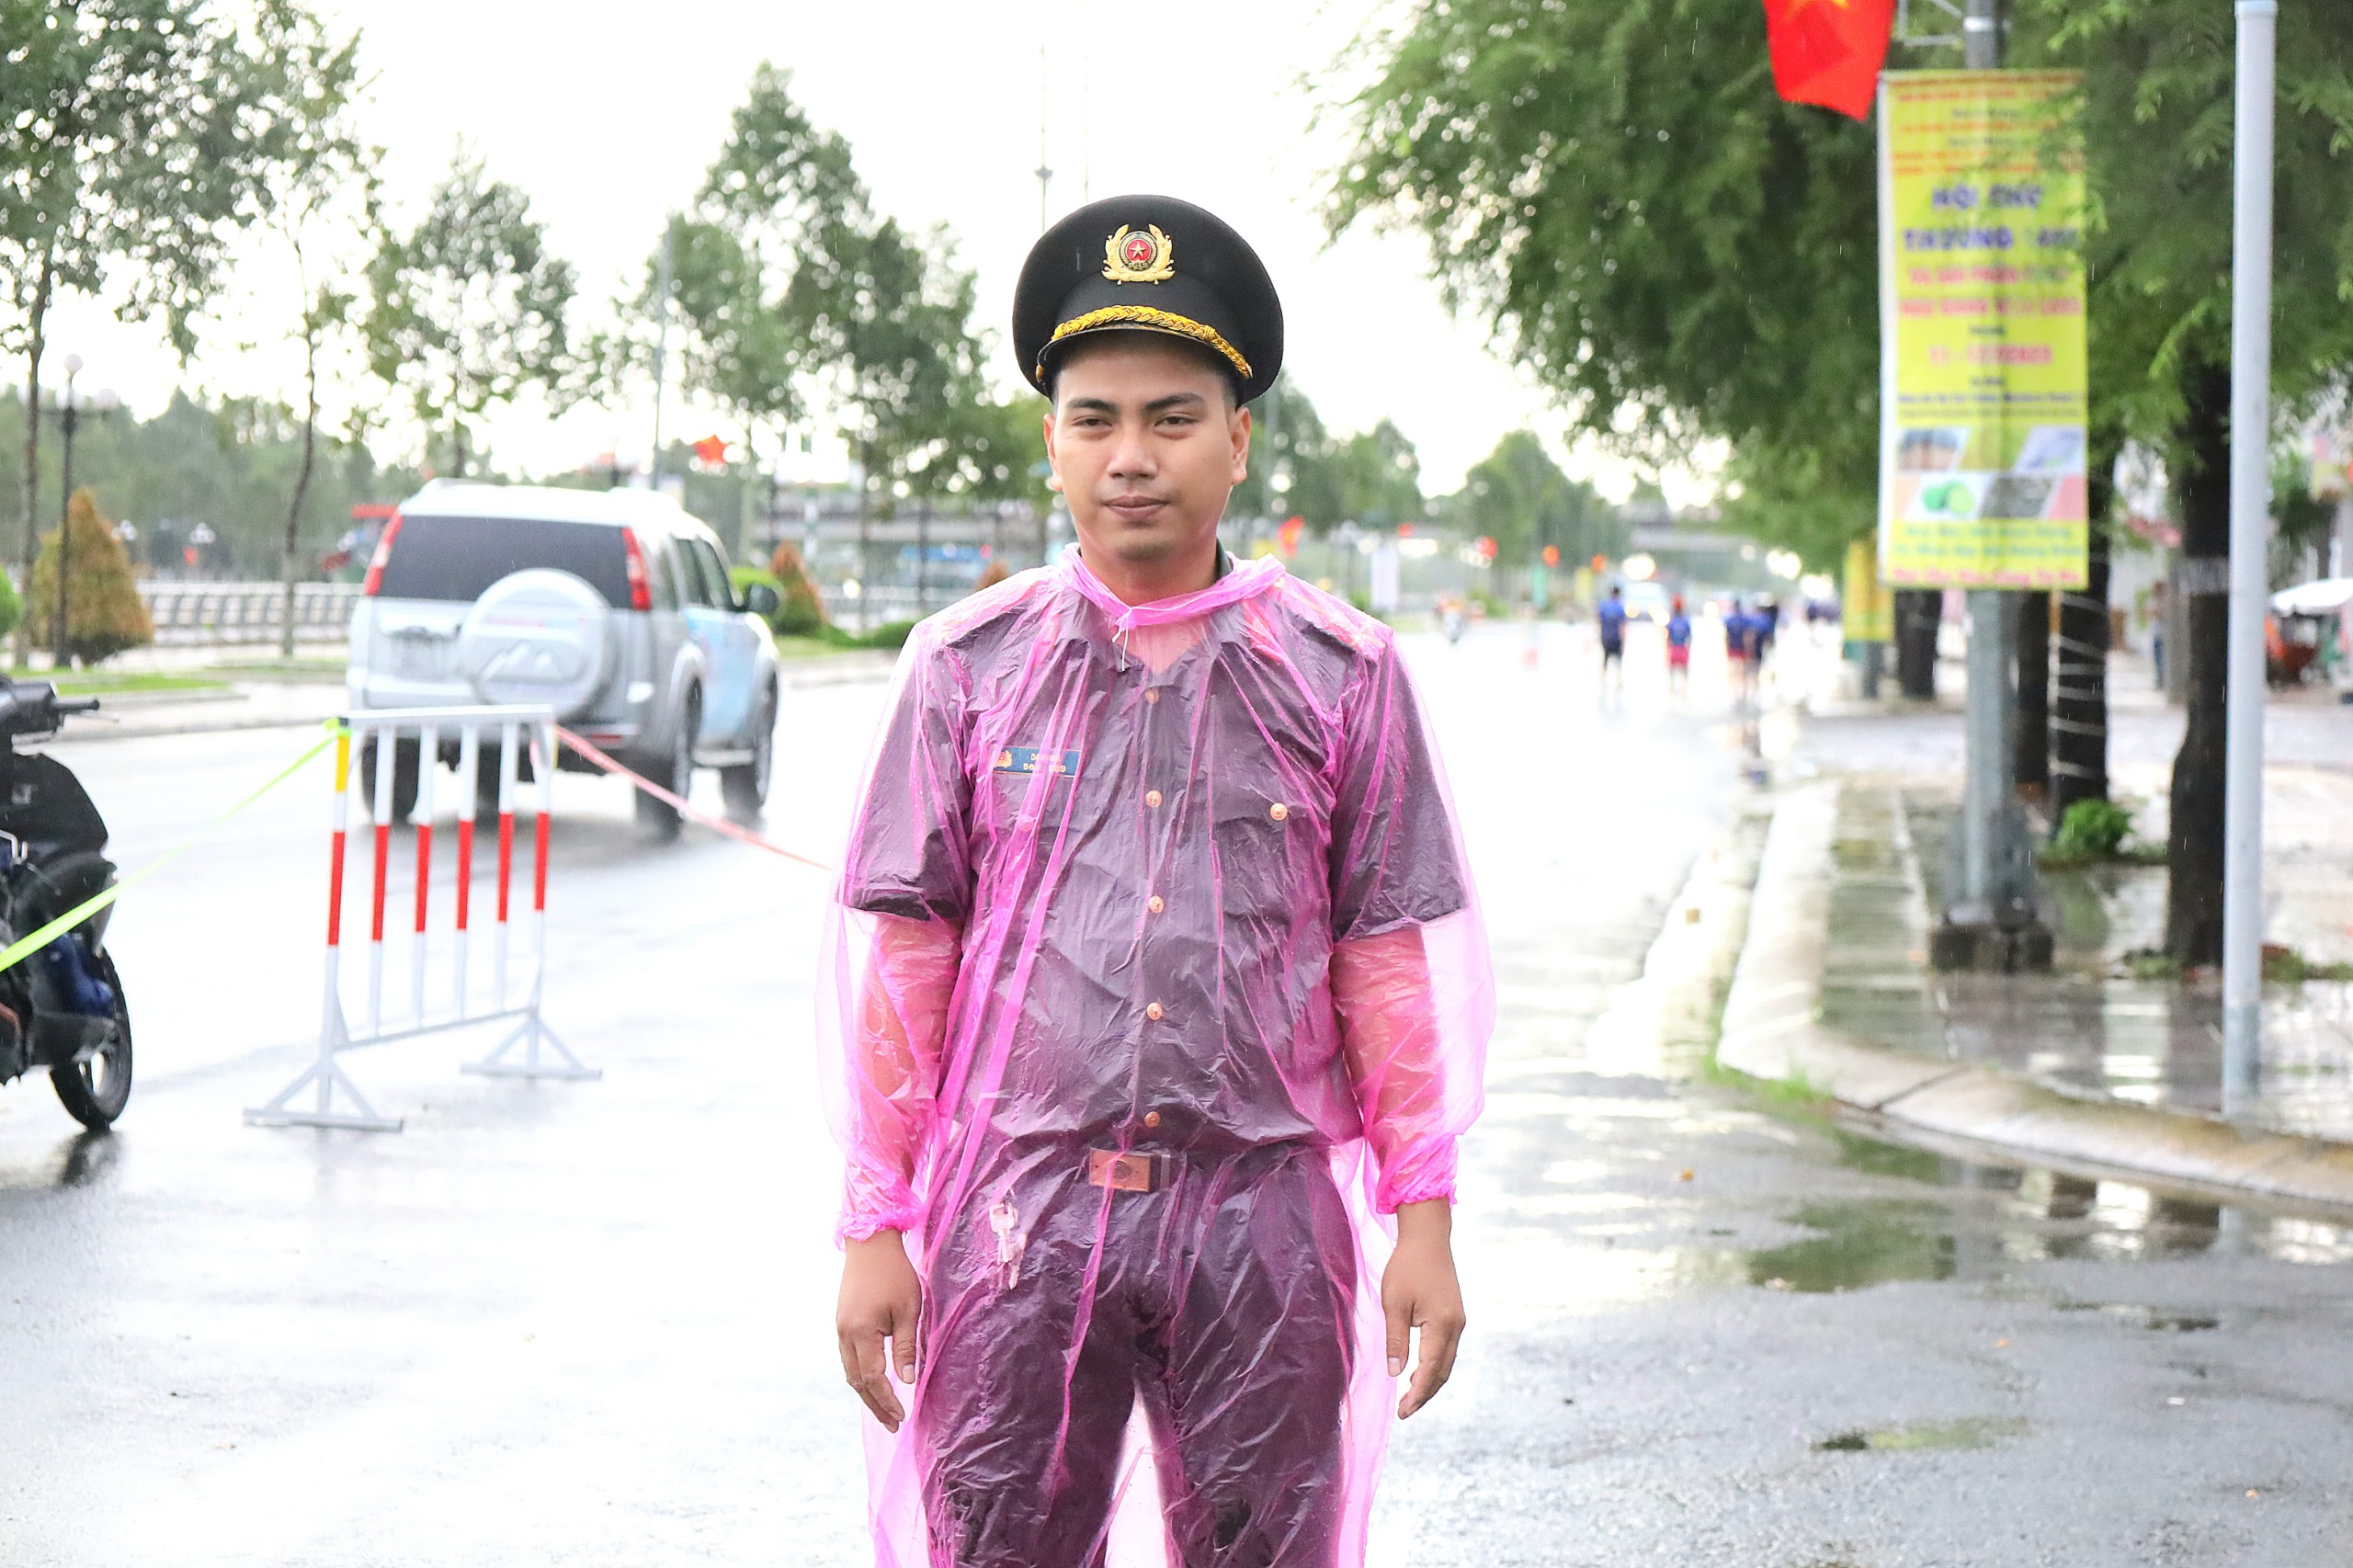 Lực lượng công an cũng đội mưa tham gia bảo đảm ANTT ATGT cho các vận động viên tham dự giải.